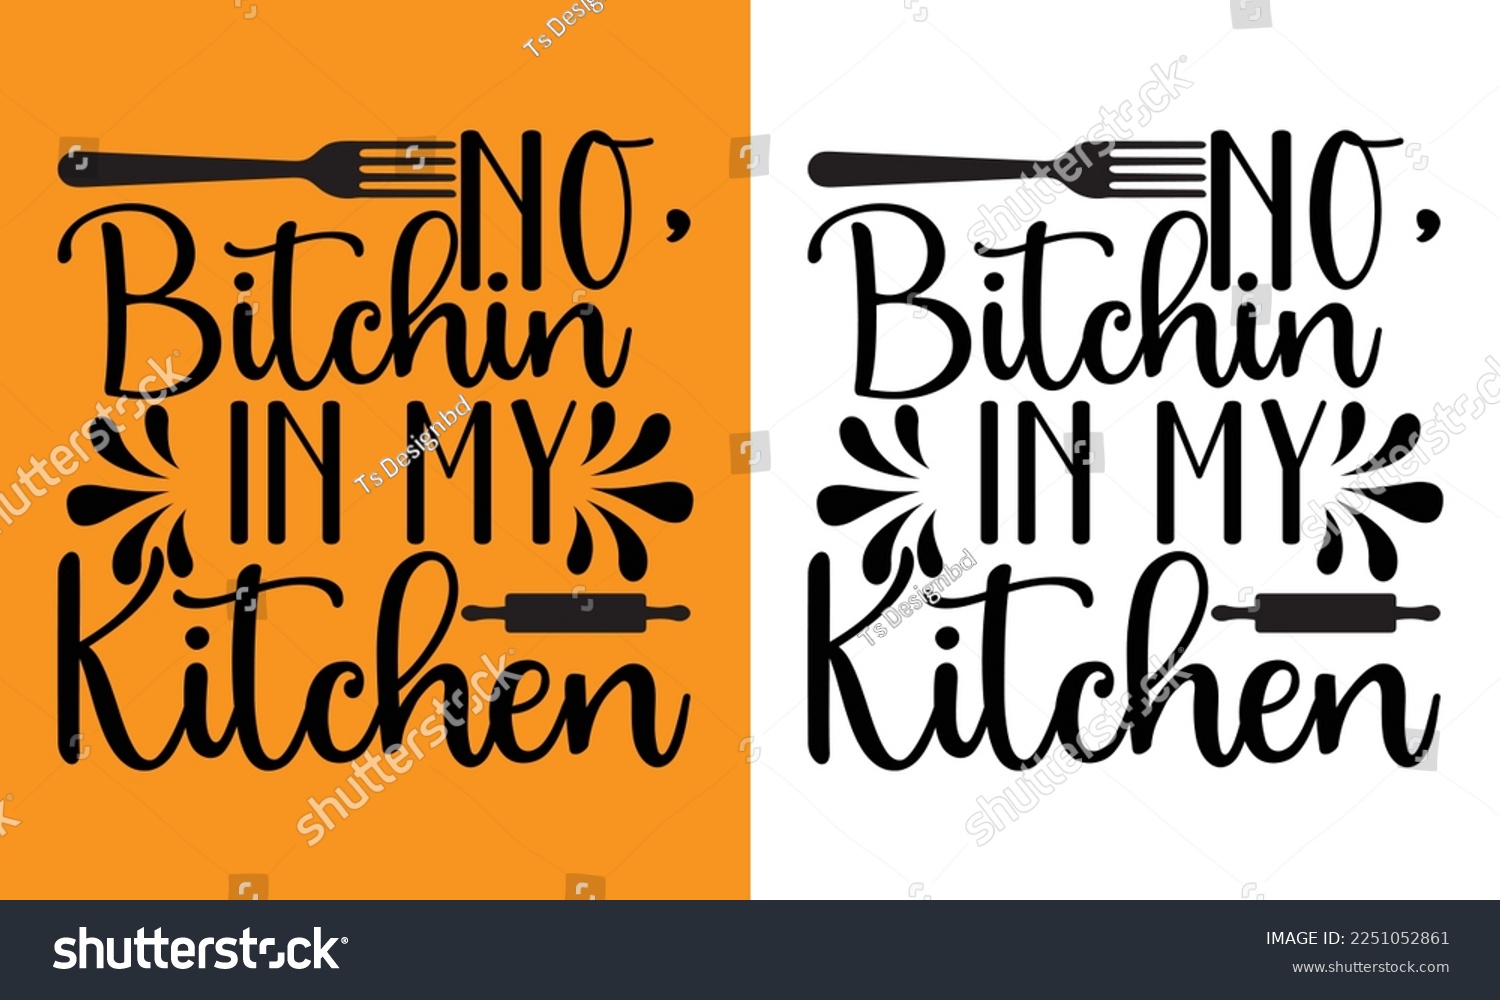 SVG of kitchen design svg cute files, svg